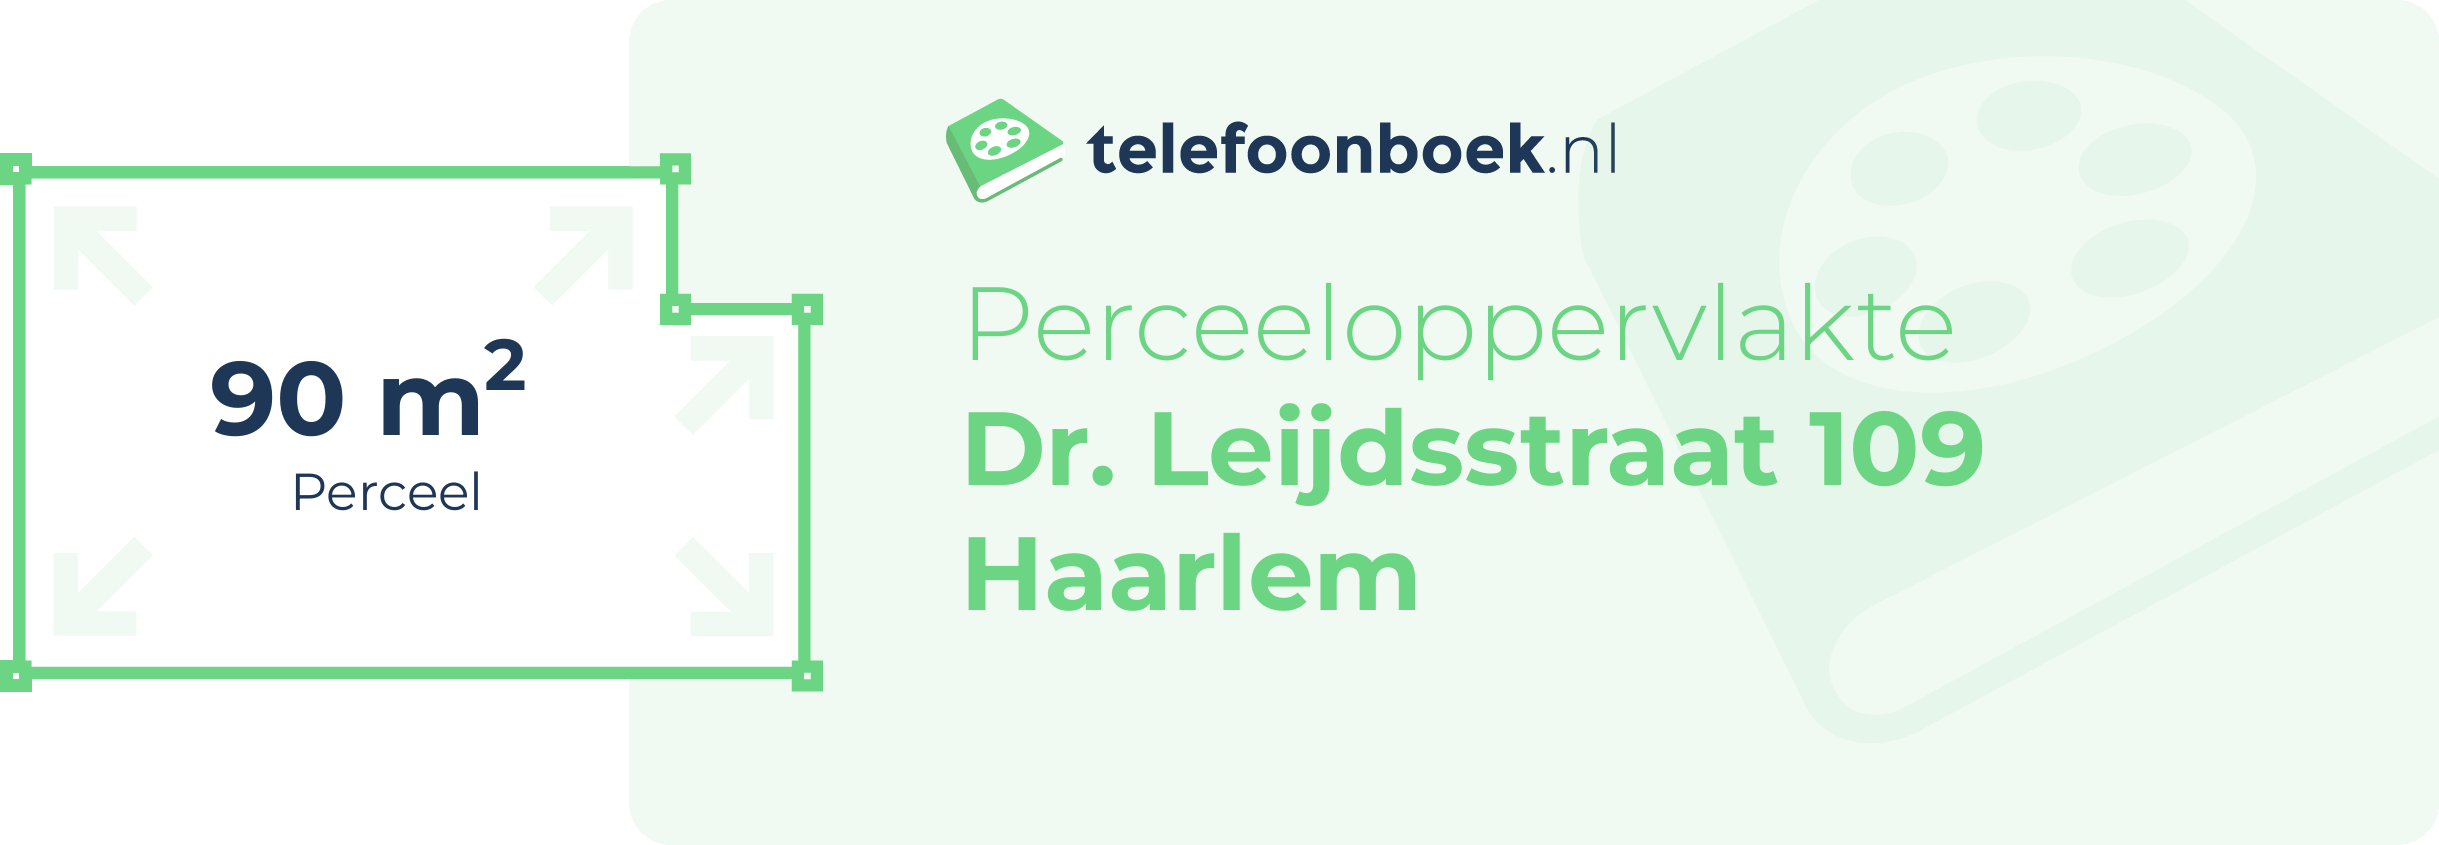 Perceeloppervlakte Dr. Leijdsstraat 109 Haarlem